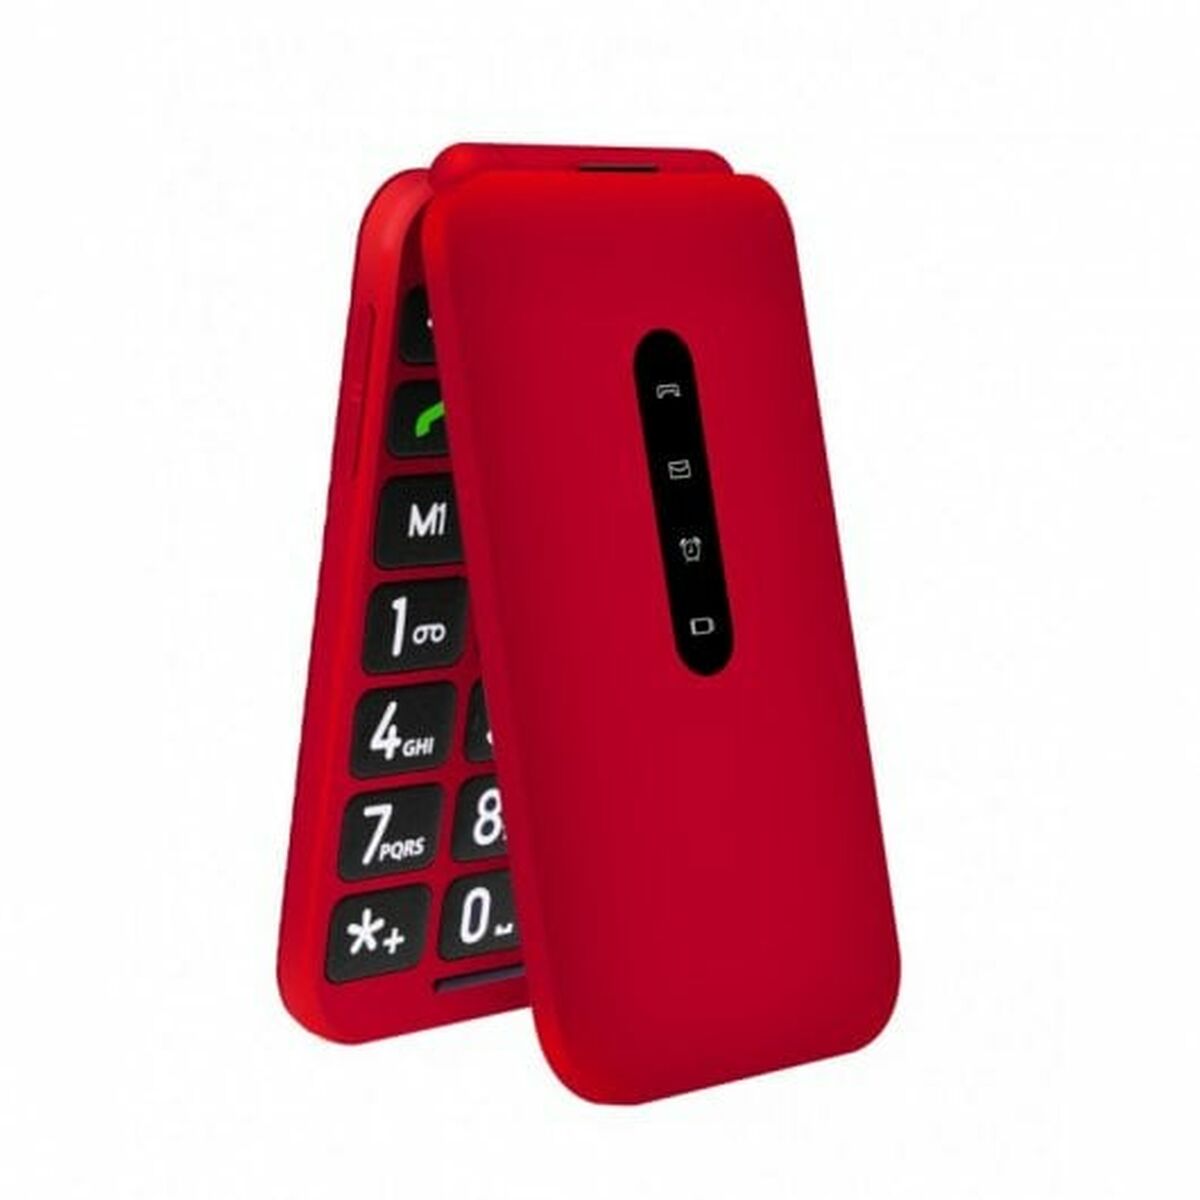 Mobiele Telefoon Telefunken TF-GSM-740-CAR-RD